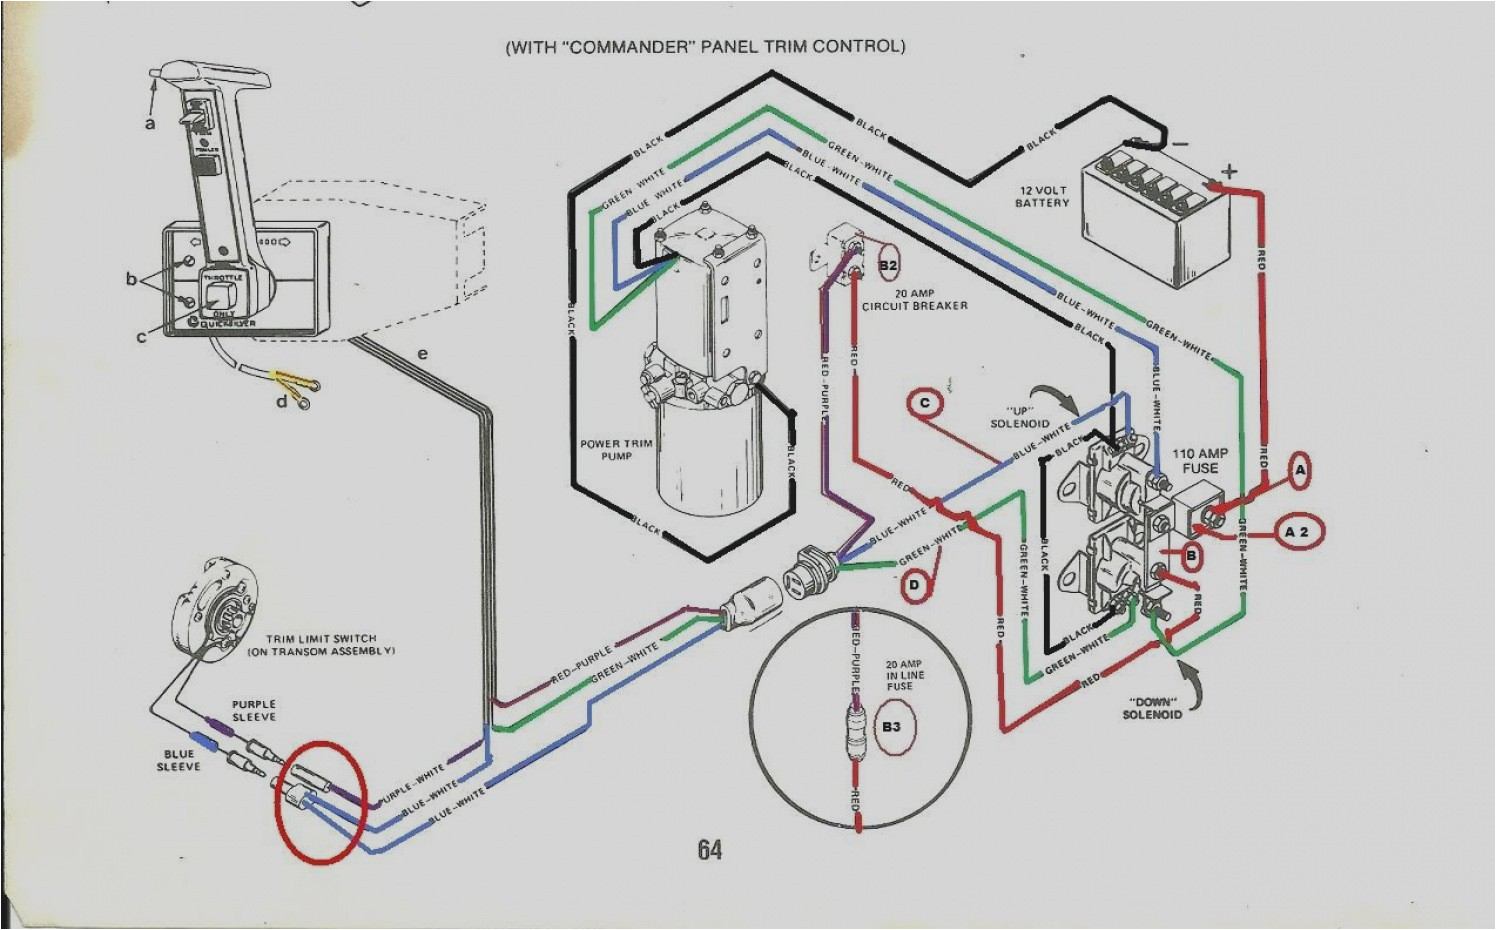 36 volt solenoid wiring diagram amf wiring diagram operations 1999 ez go txt 36 volt wiring diagram ez go 36 volt wiring